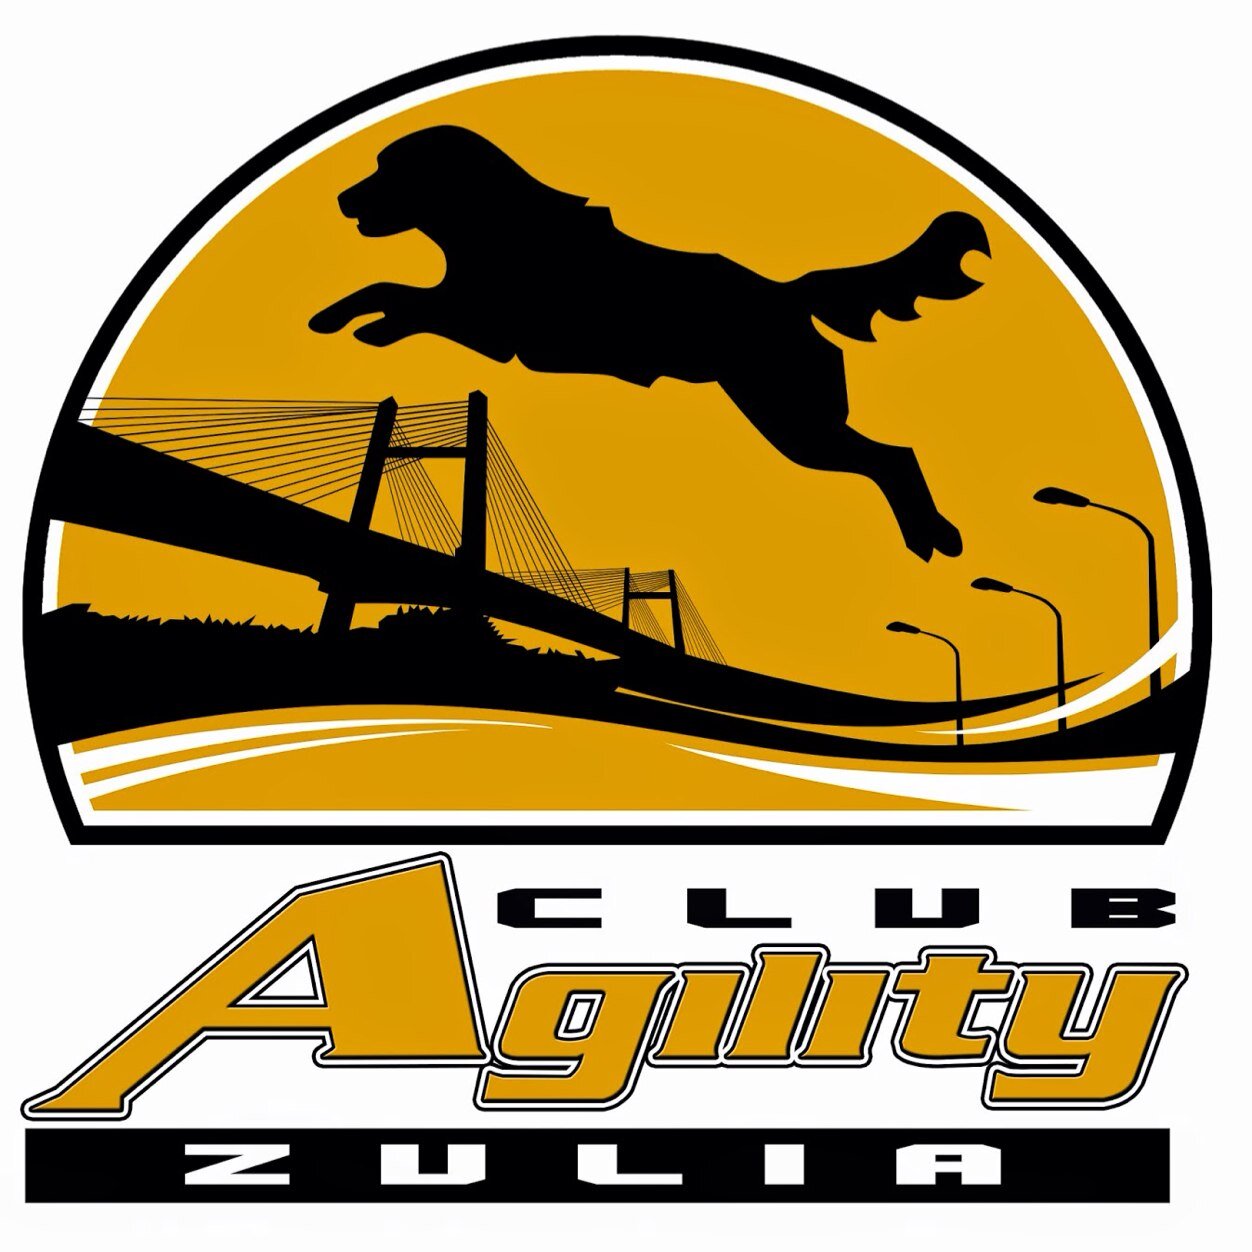 Twitter @AgilityZulia @AgilityMcbo Facebook: Club Agility Zulia Correo: Clubagilityzulia@gmail.com ClubAgilityMcbo@hotmail.com